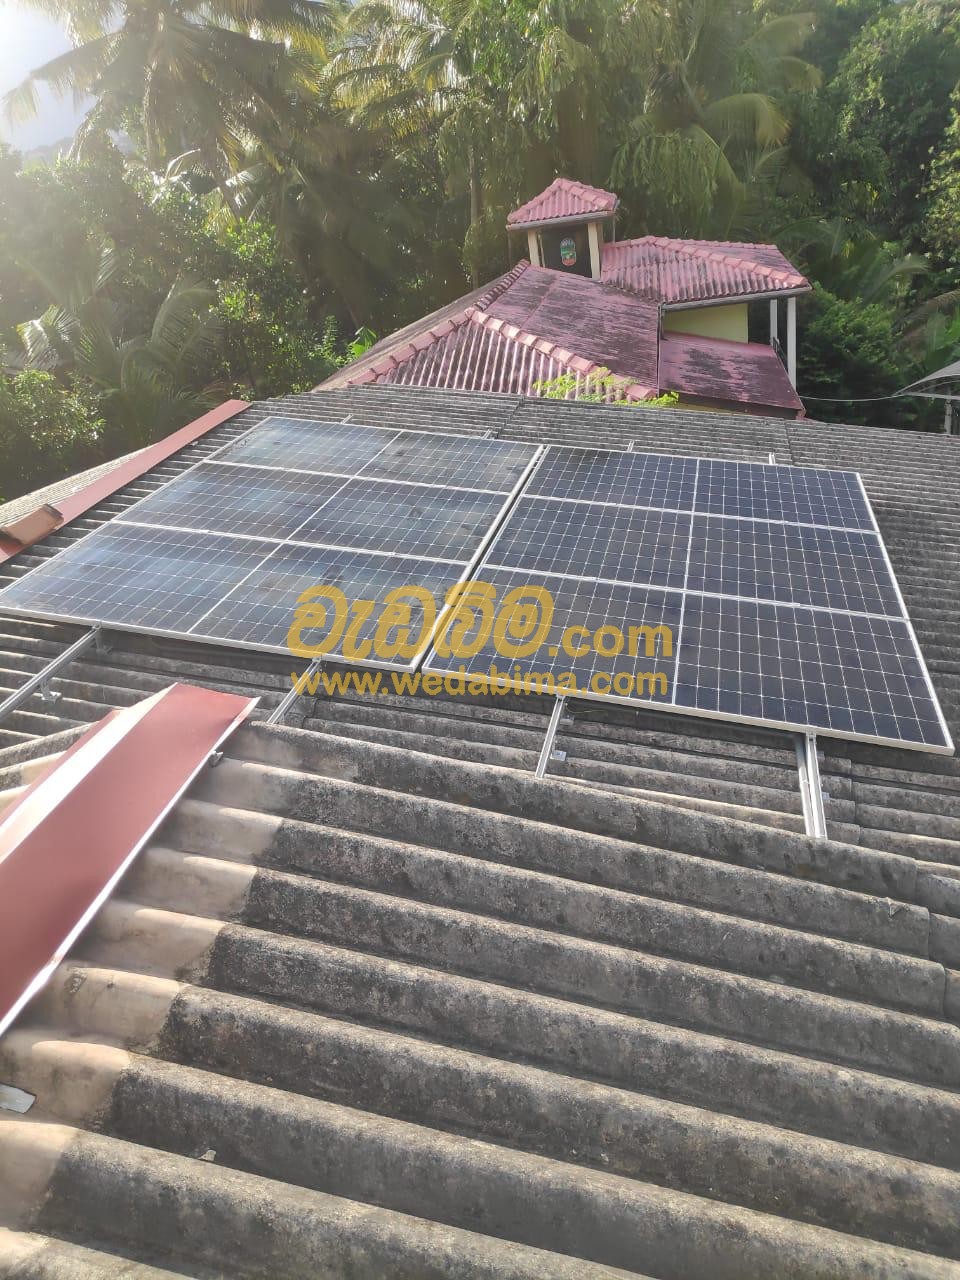 Solar in Sri Lanka